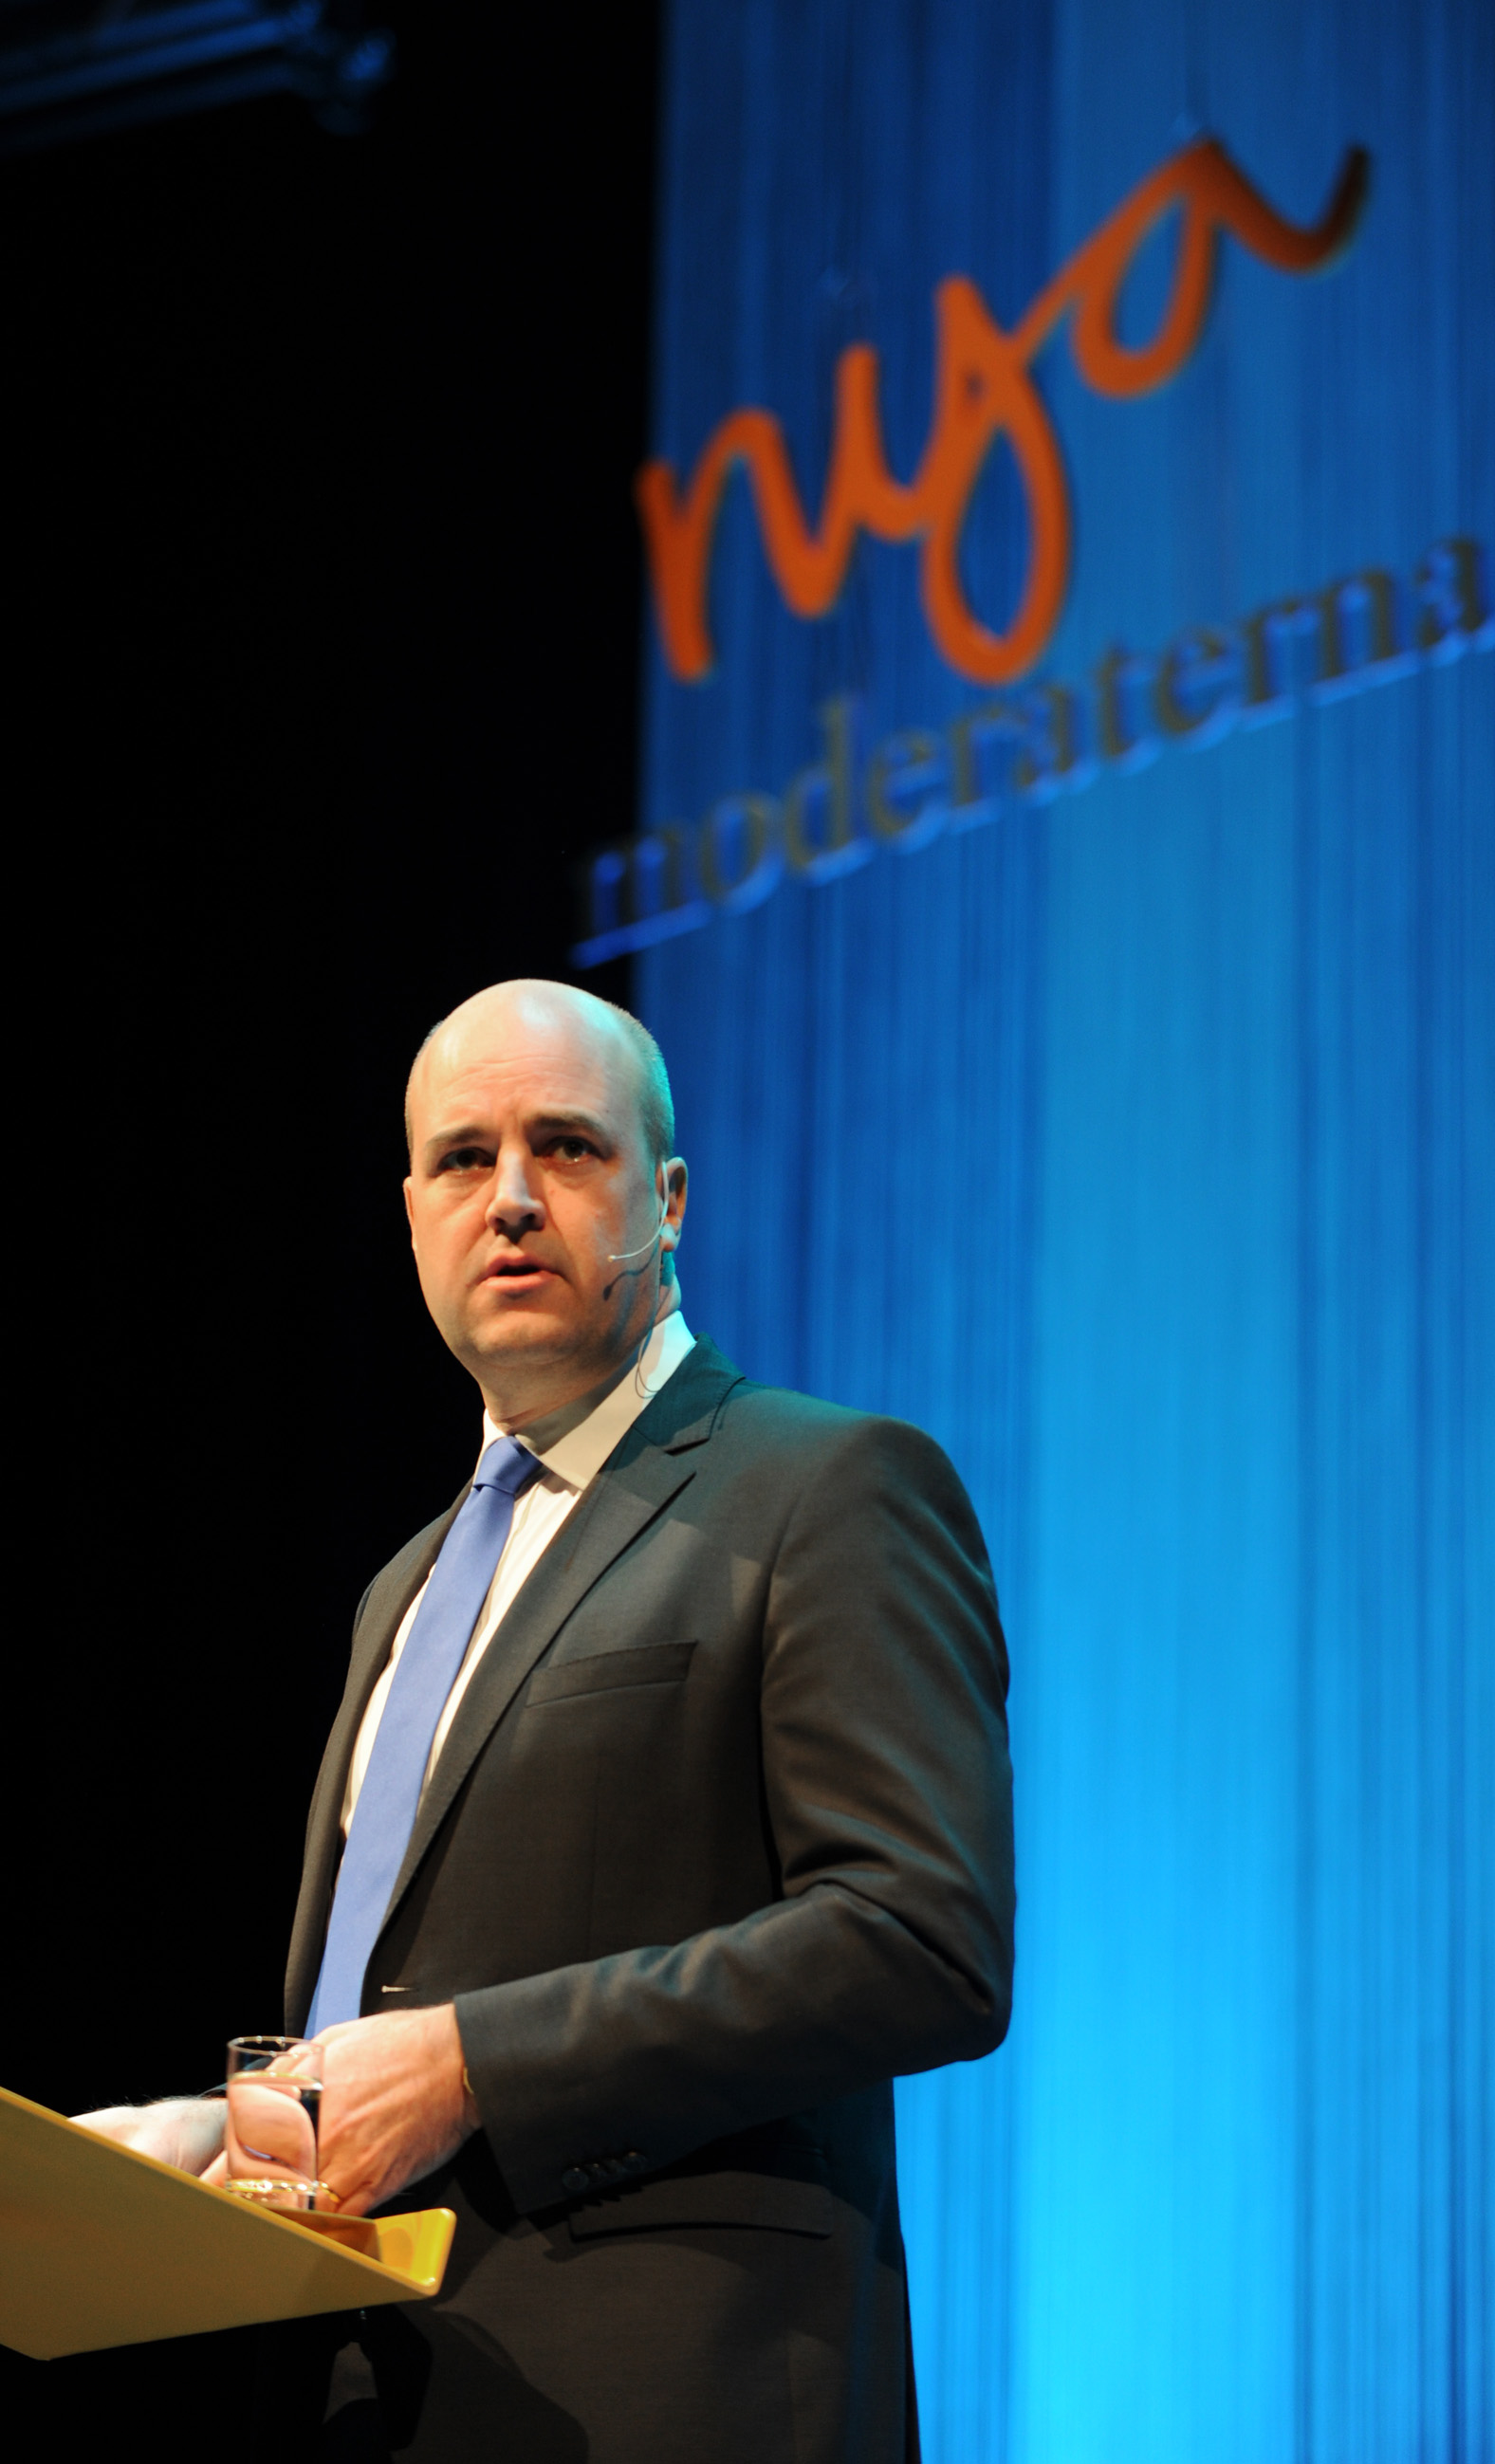 Reinfeldt inledningstalar på Moderaternas partistämma i Örebro. Det återstår att se om partitoppen kommer svänga gällande frågan om att öppna upp för ökad insyn.